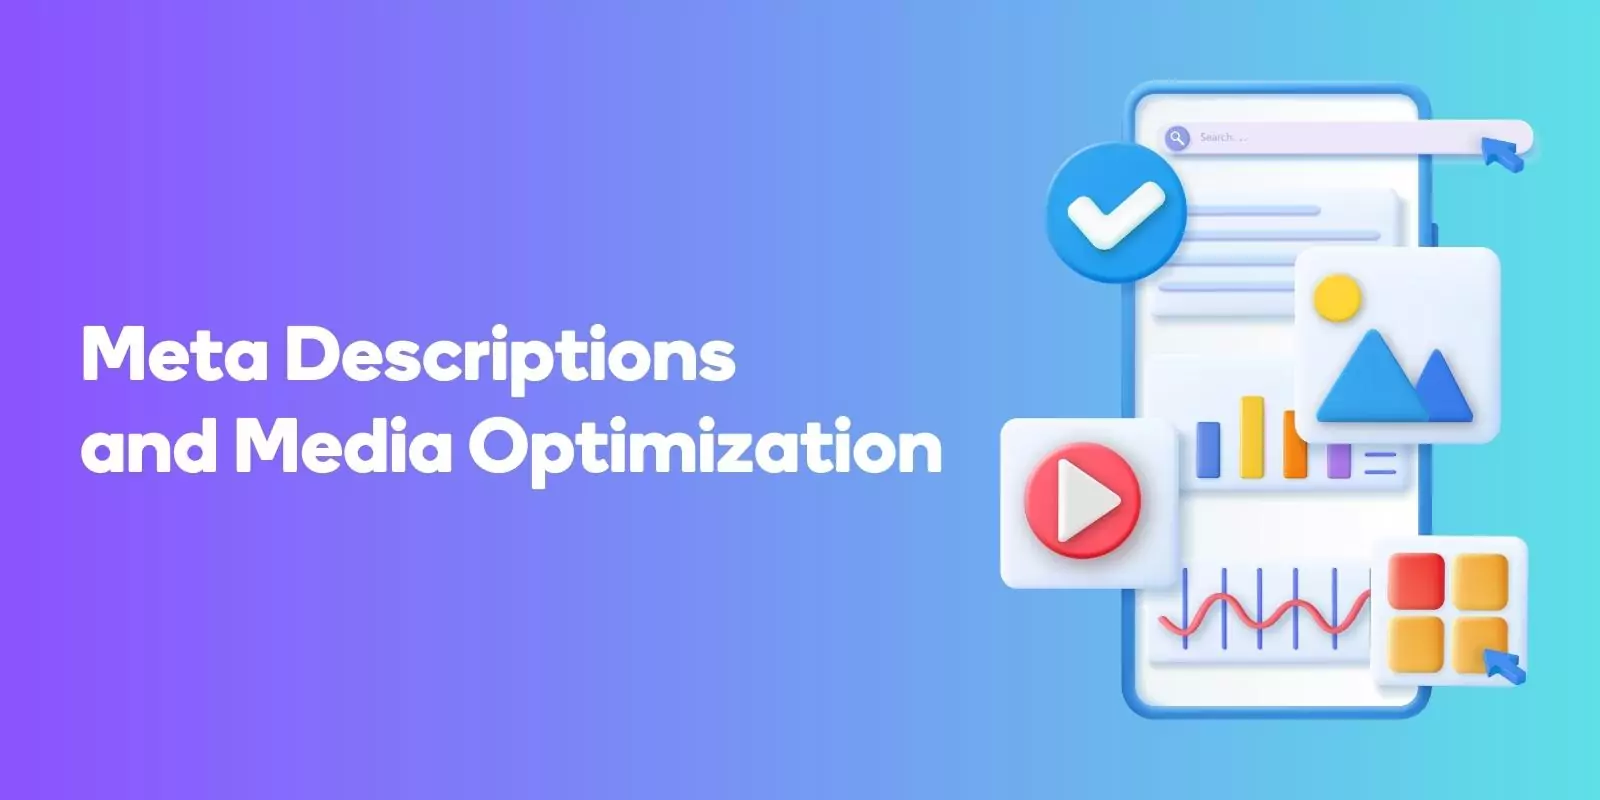 Meta Descriptions and Media Optimization